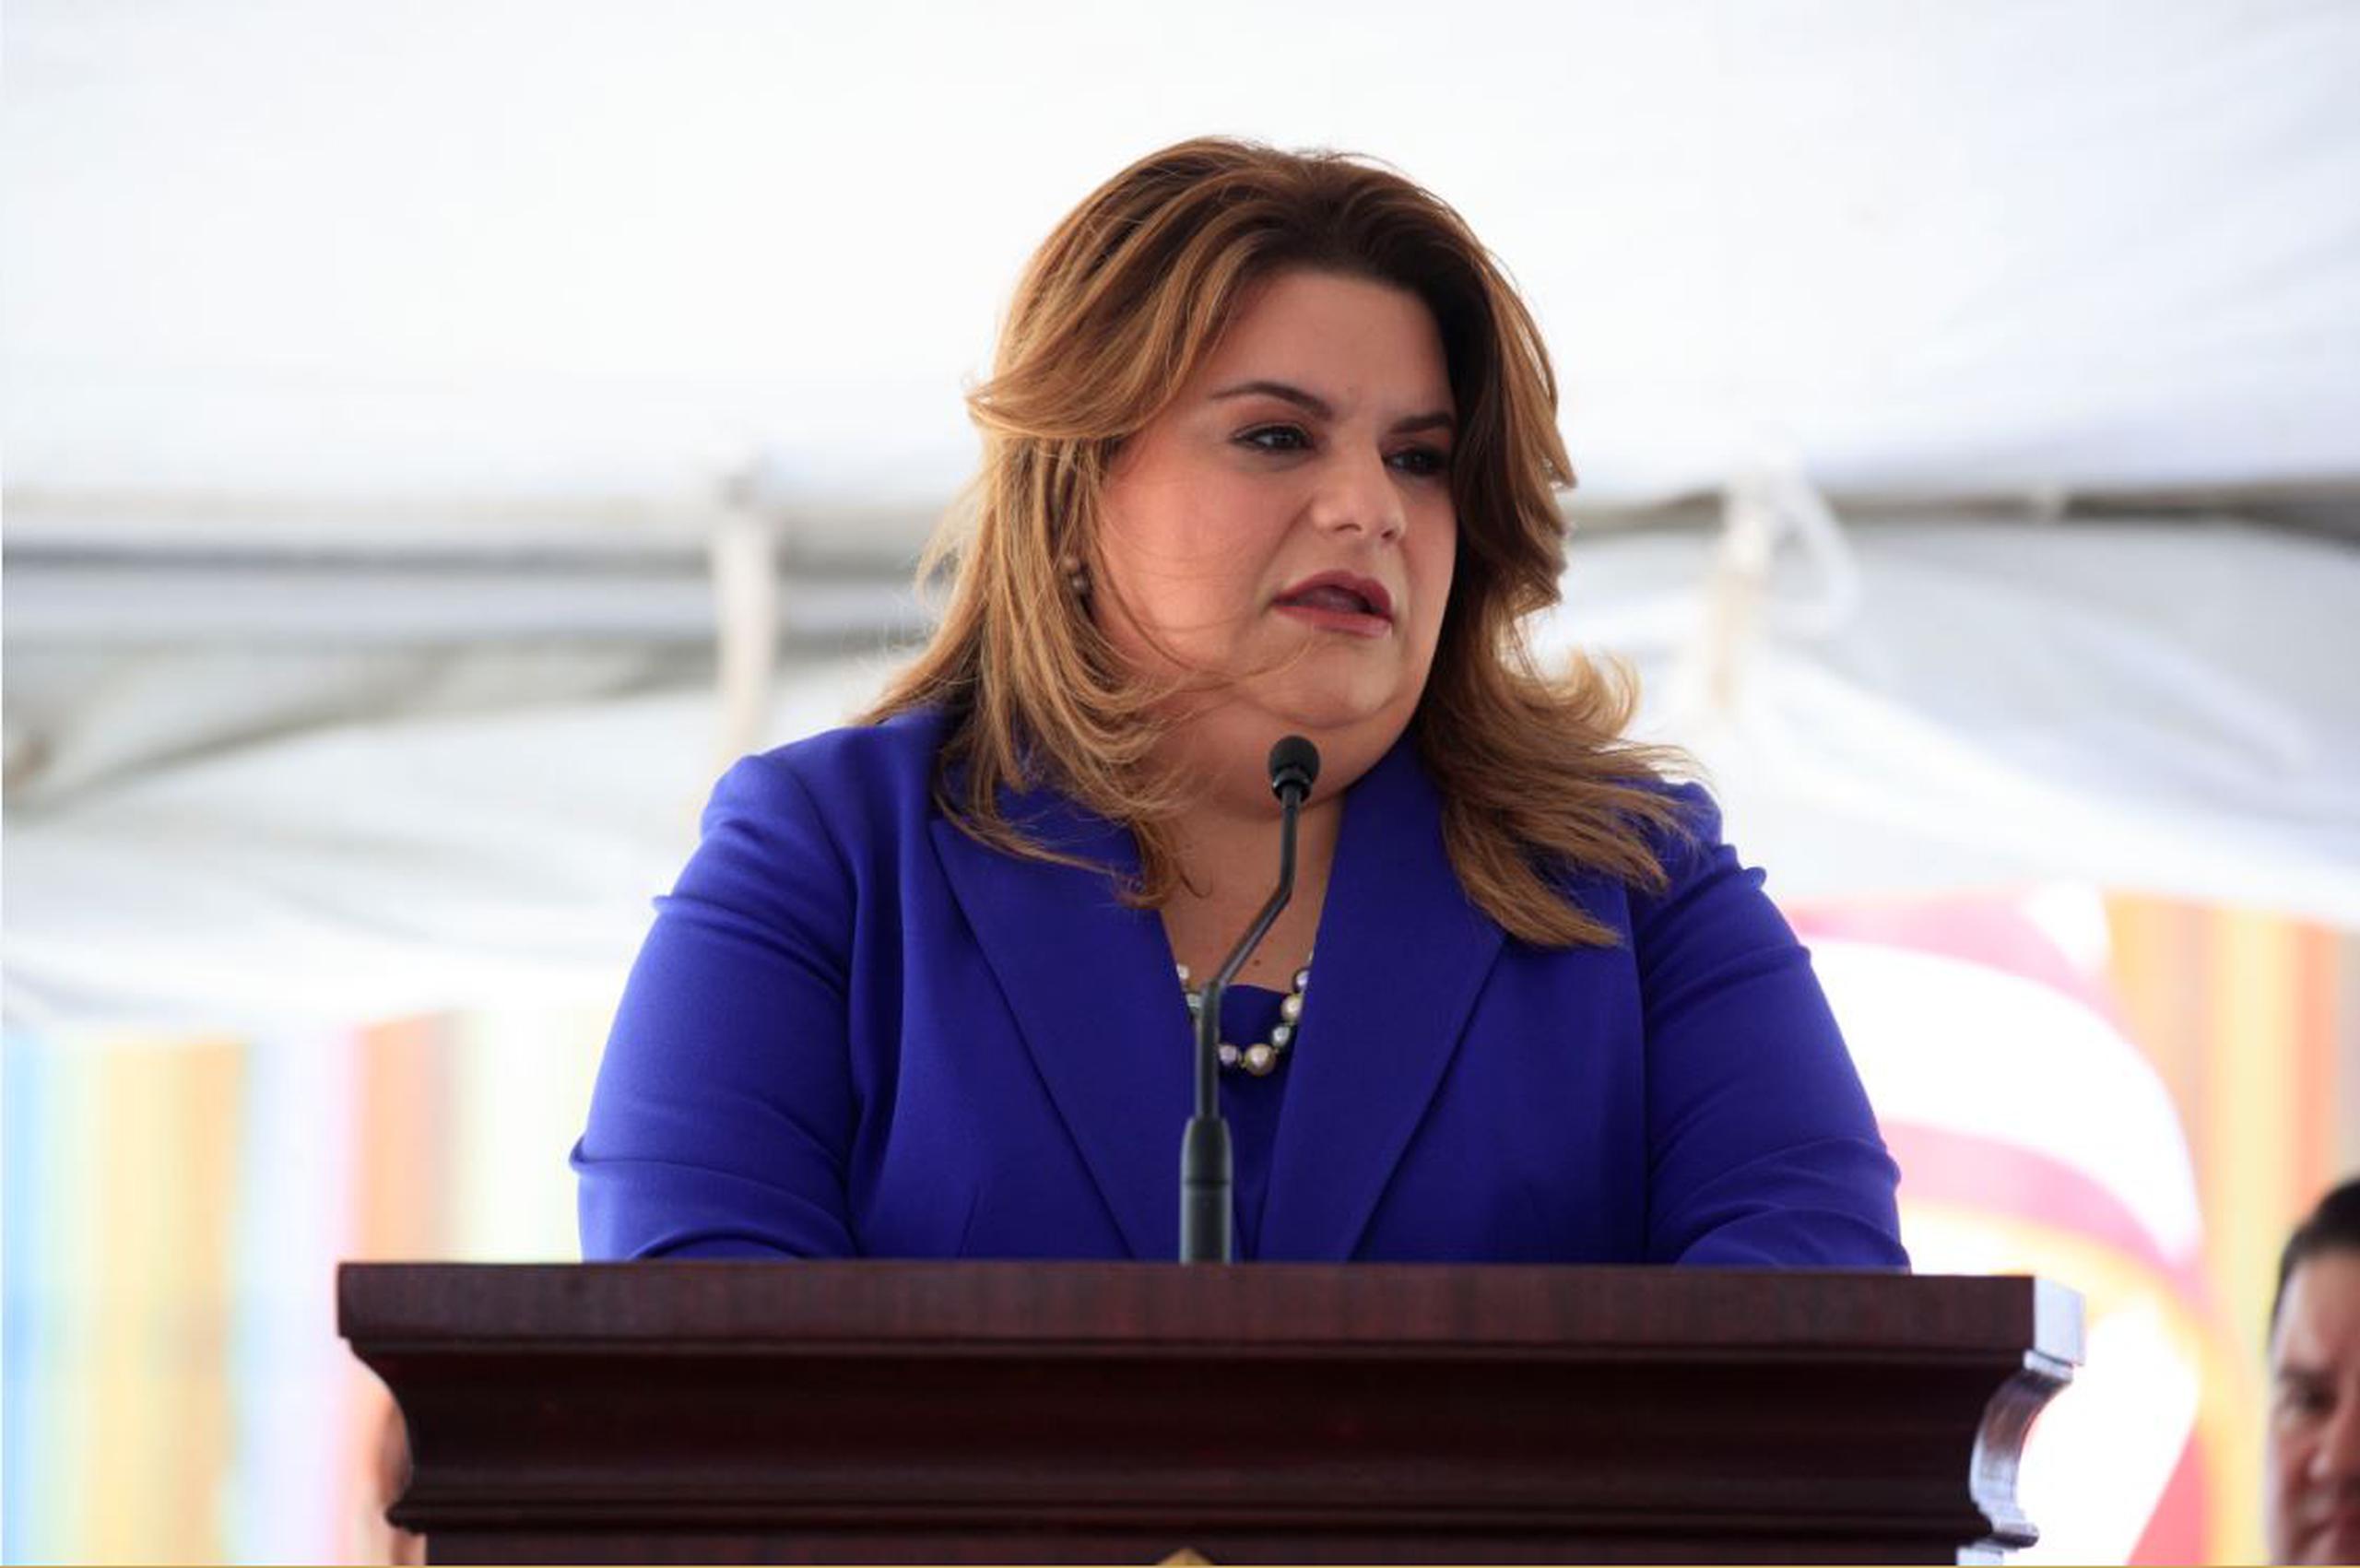 "La controversia de contratación del gobierno ocurrida hace unas semanas en nada tienen que ver con que hace más de 5 años me convirtiera en madrina de la menor", dijo Jenniffer González.